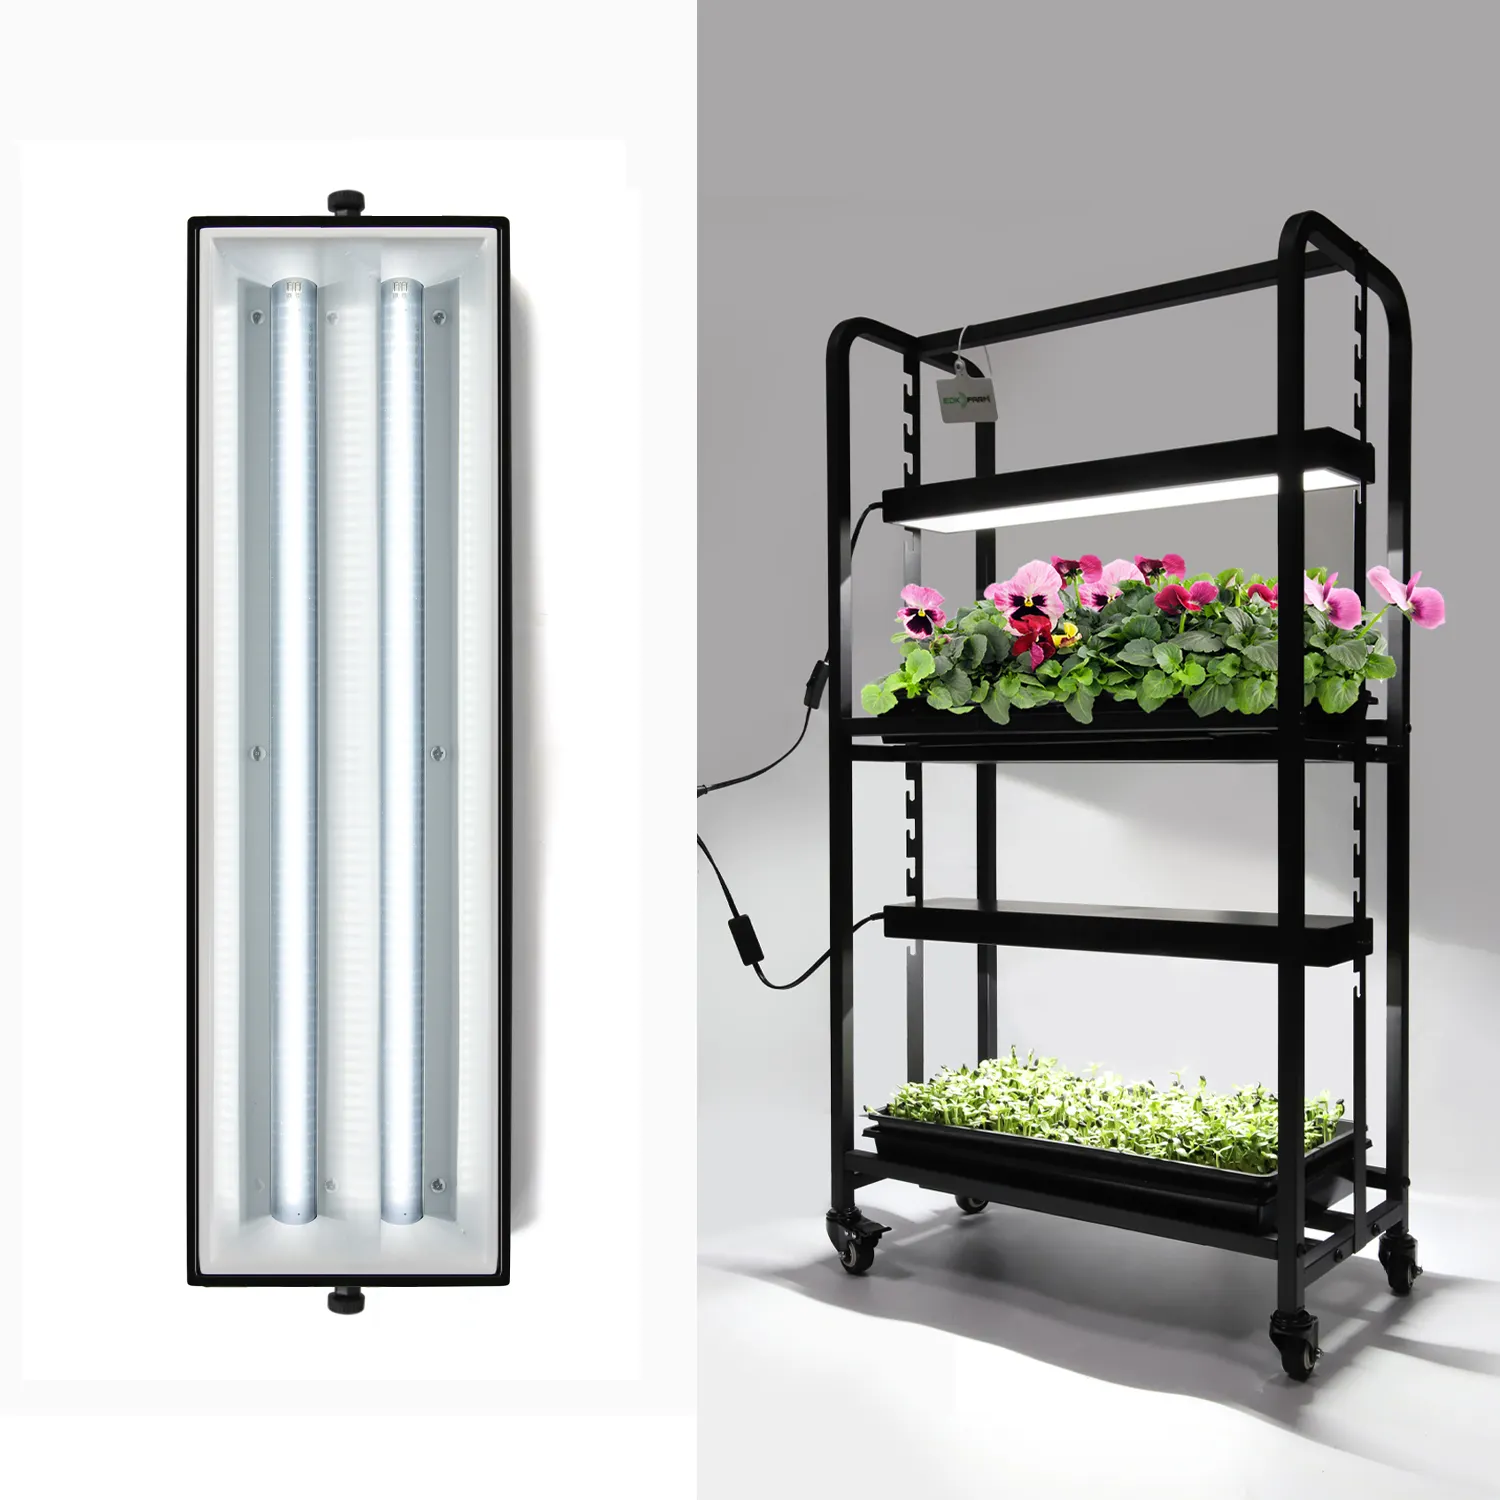 Preis Vertical Grow Rack Kit Turm Blumen salat Erdbeer-Wachstums licht für den Hobby-Anbau zu Hause